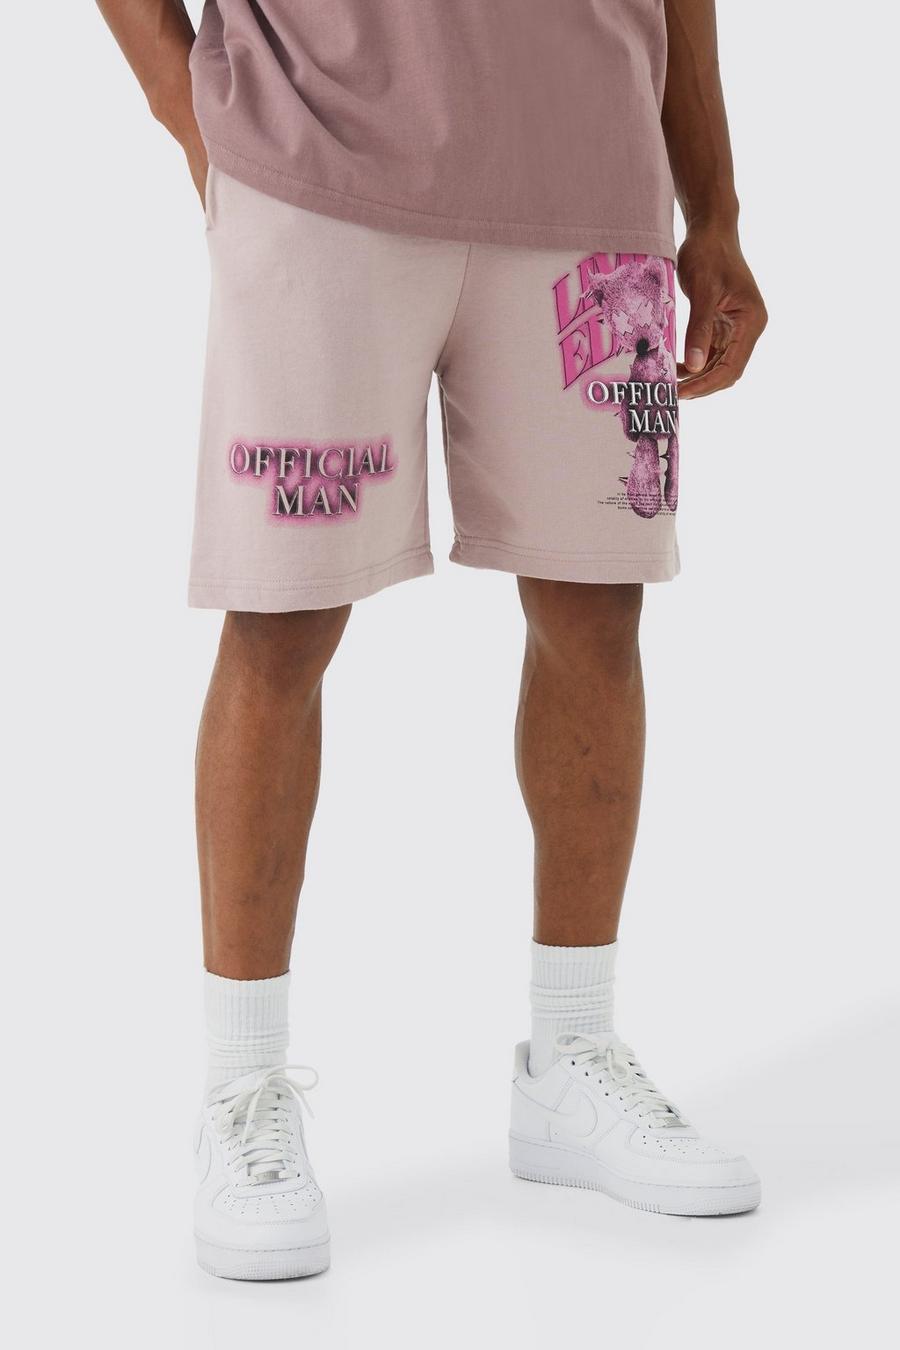 Pantalón corto holgado Limited de tela jersey con estampado de osito de peluche, Dusty pink image number 1